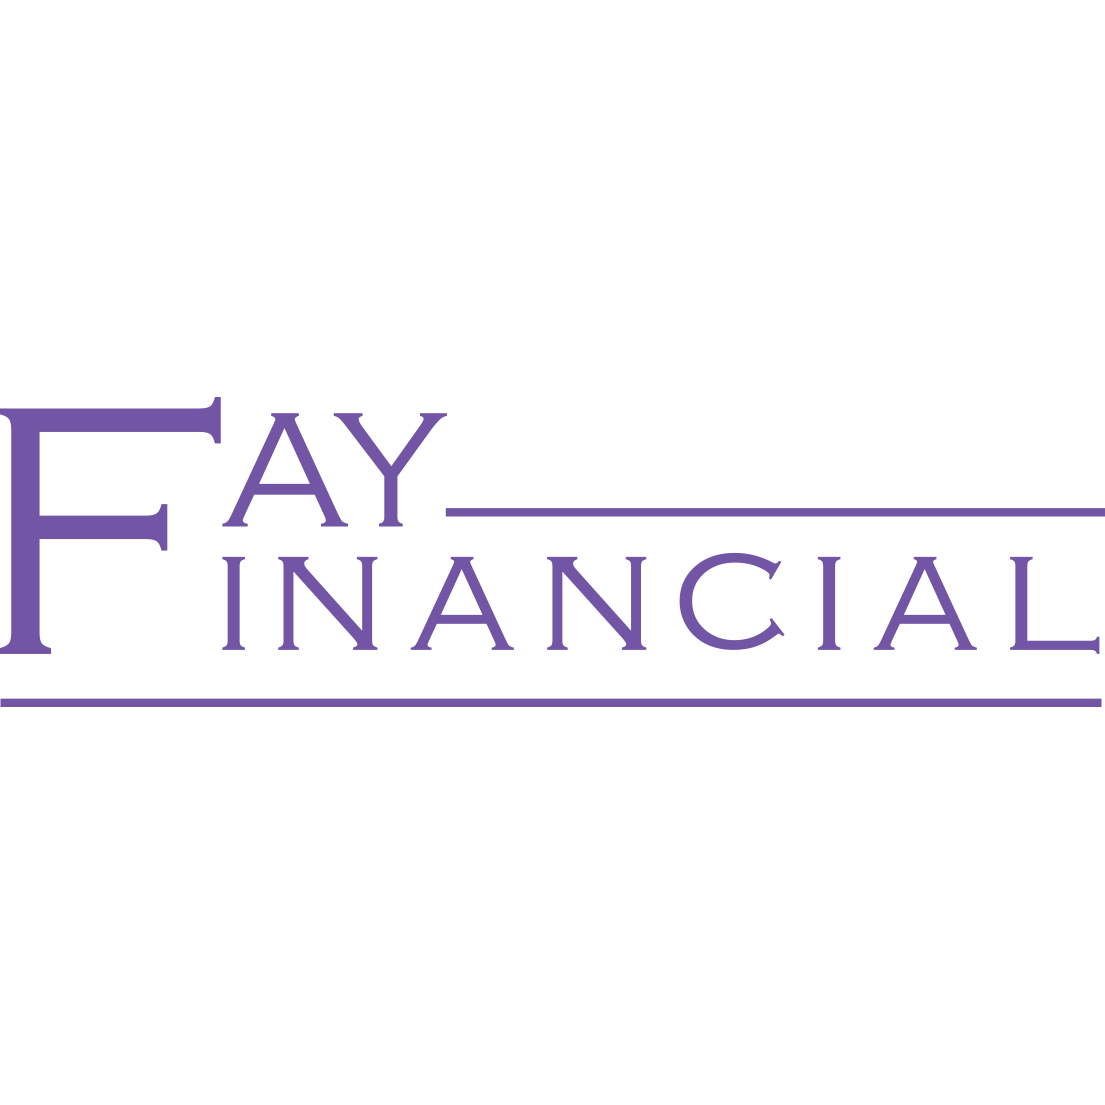 Fay Financial